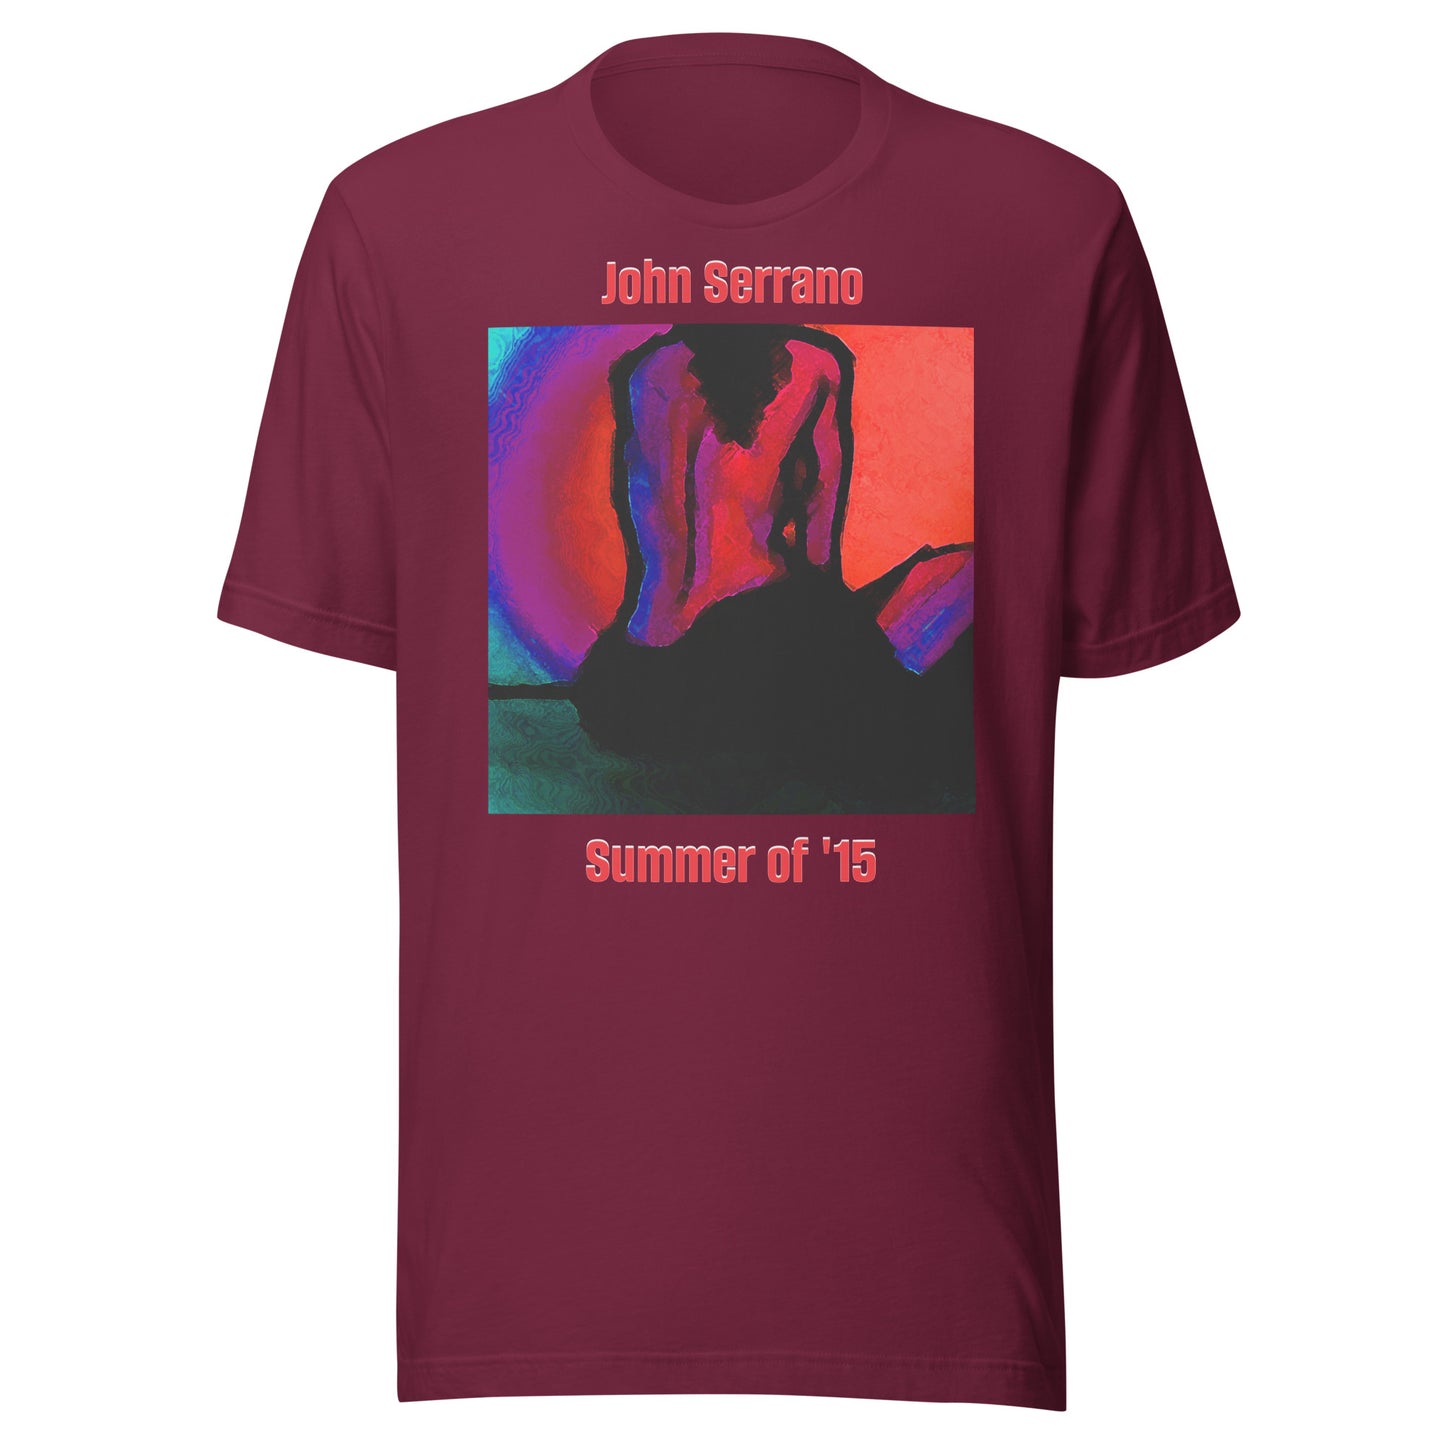 John Serrano - Summer of '15 T-Shirt